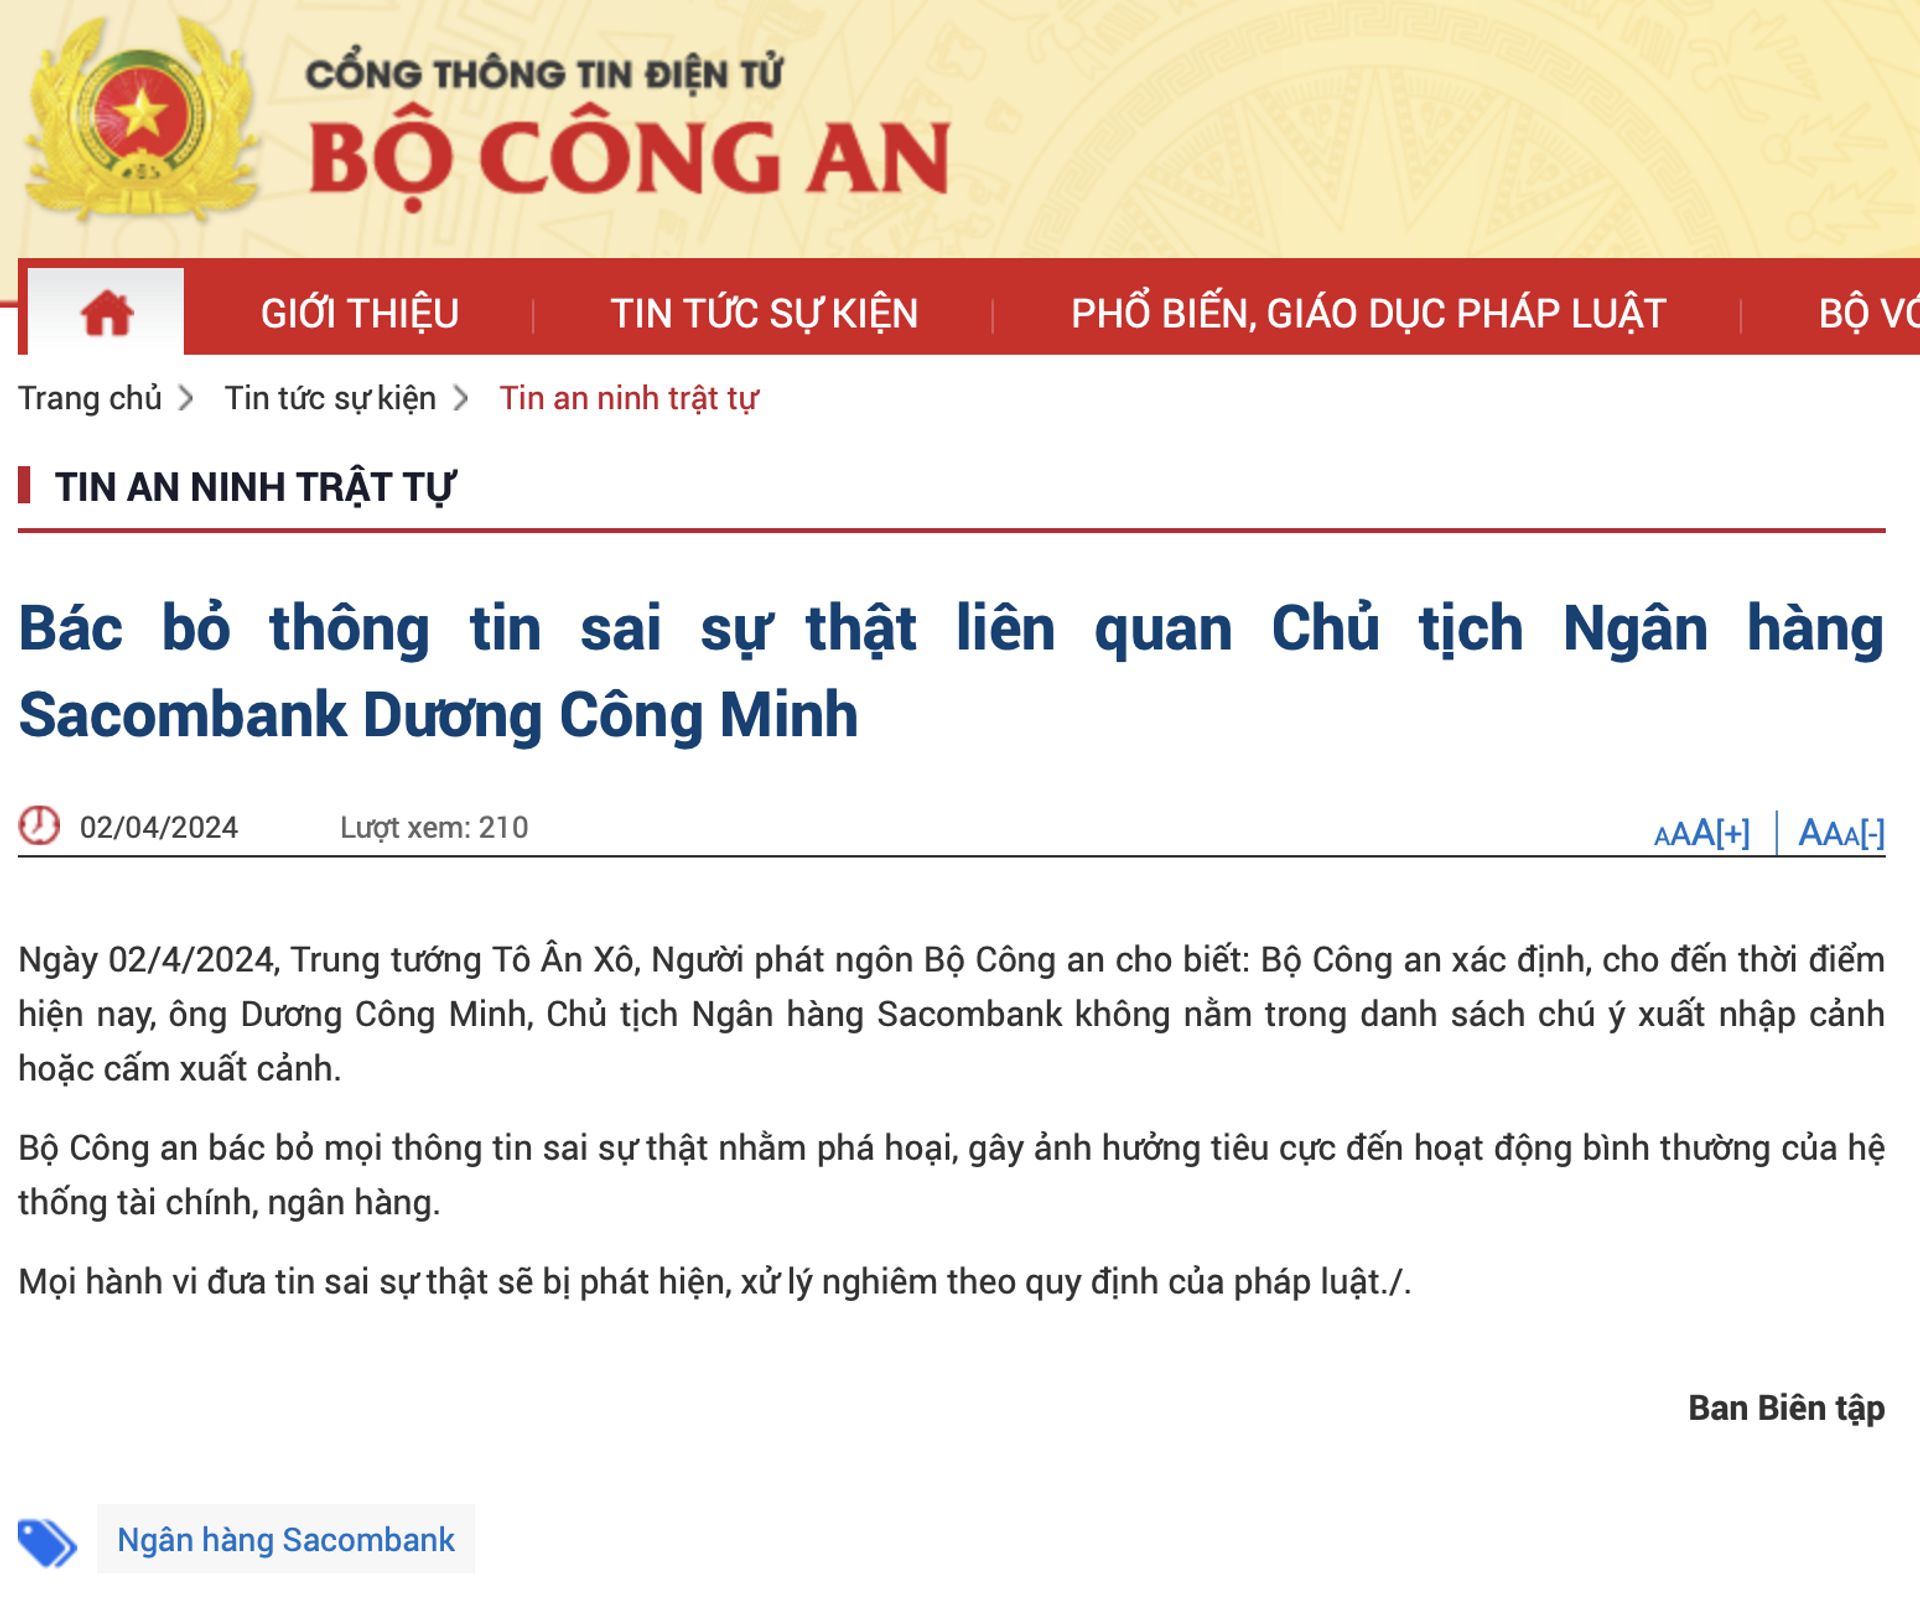 Bộ Công an: Chủ tịch Sacombank Dương Công Minh không bị cấm xuất cảnh - Sputnik Việt Nam, 1920, 02.04.2024